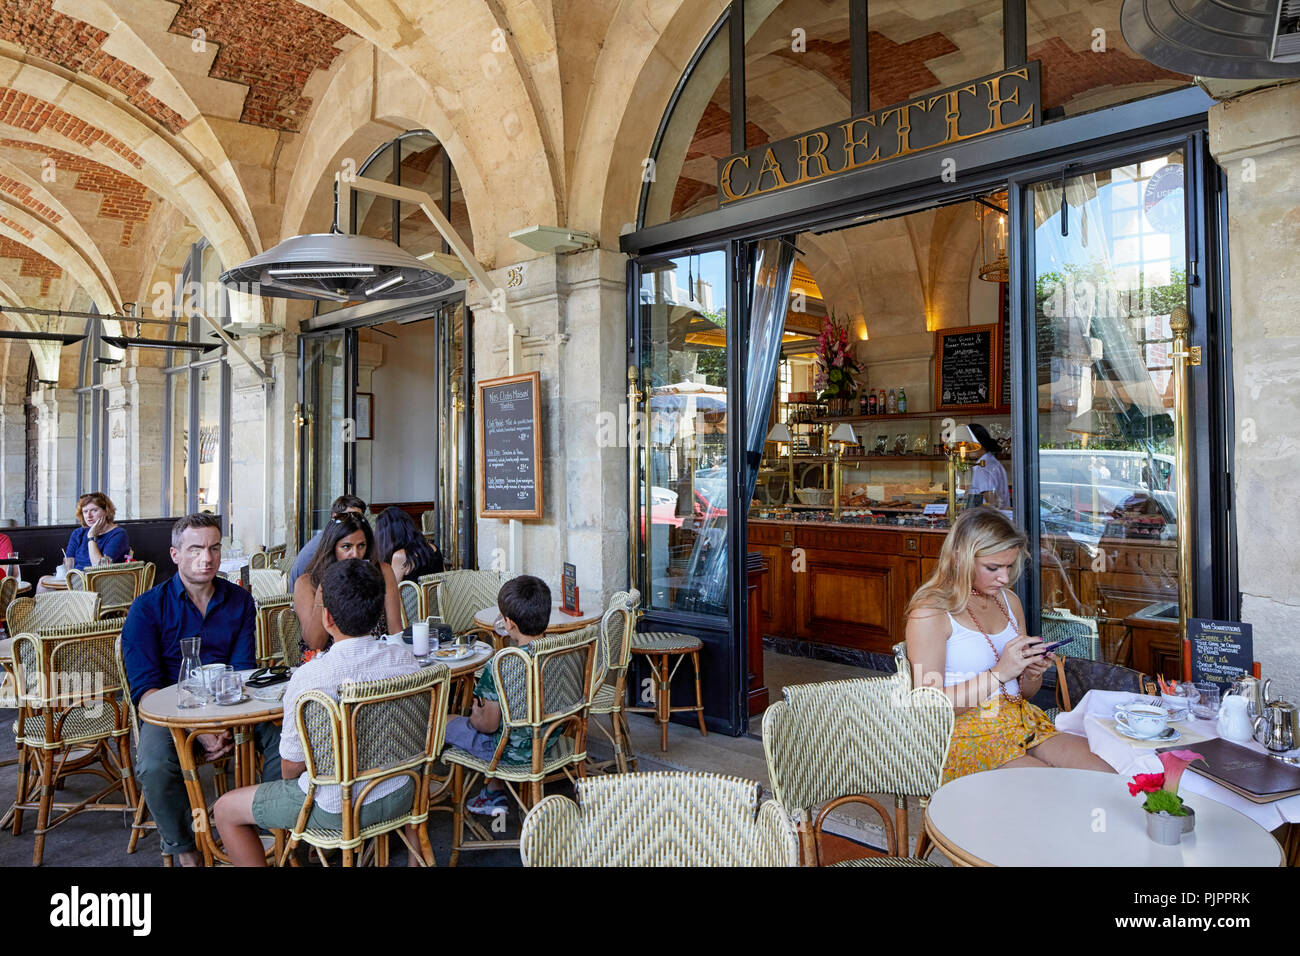 Restaurant Carette, Place des Vosges, la plus ancienne place de Paris prévues, quartier du Marais, Paris, France, Europe Banque D'Images